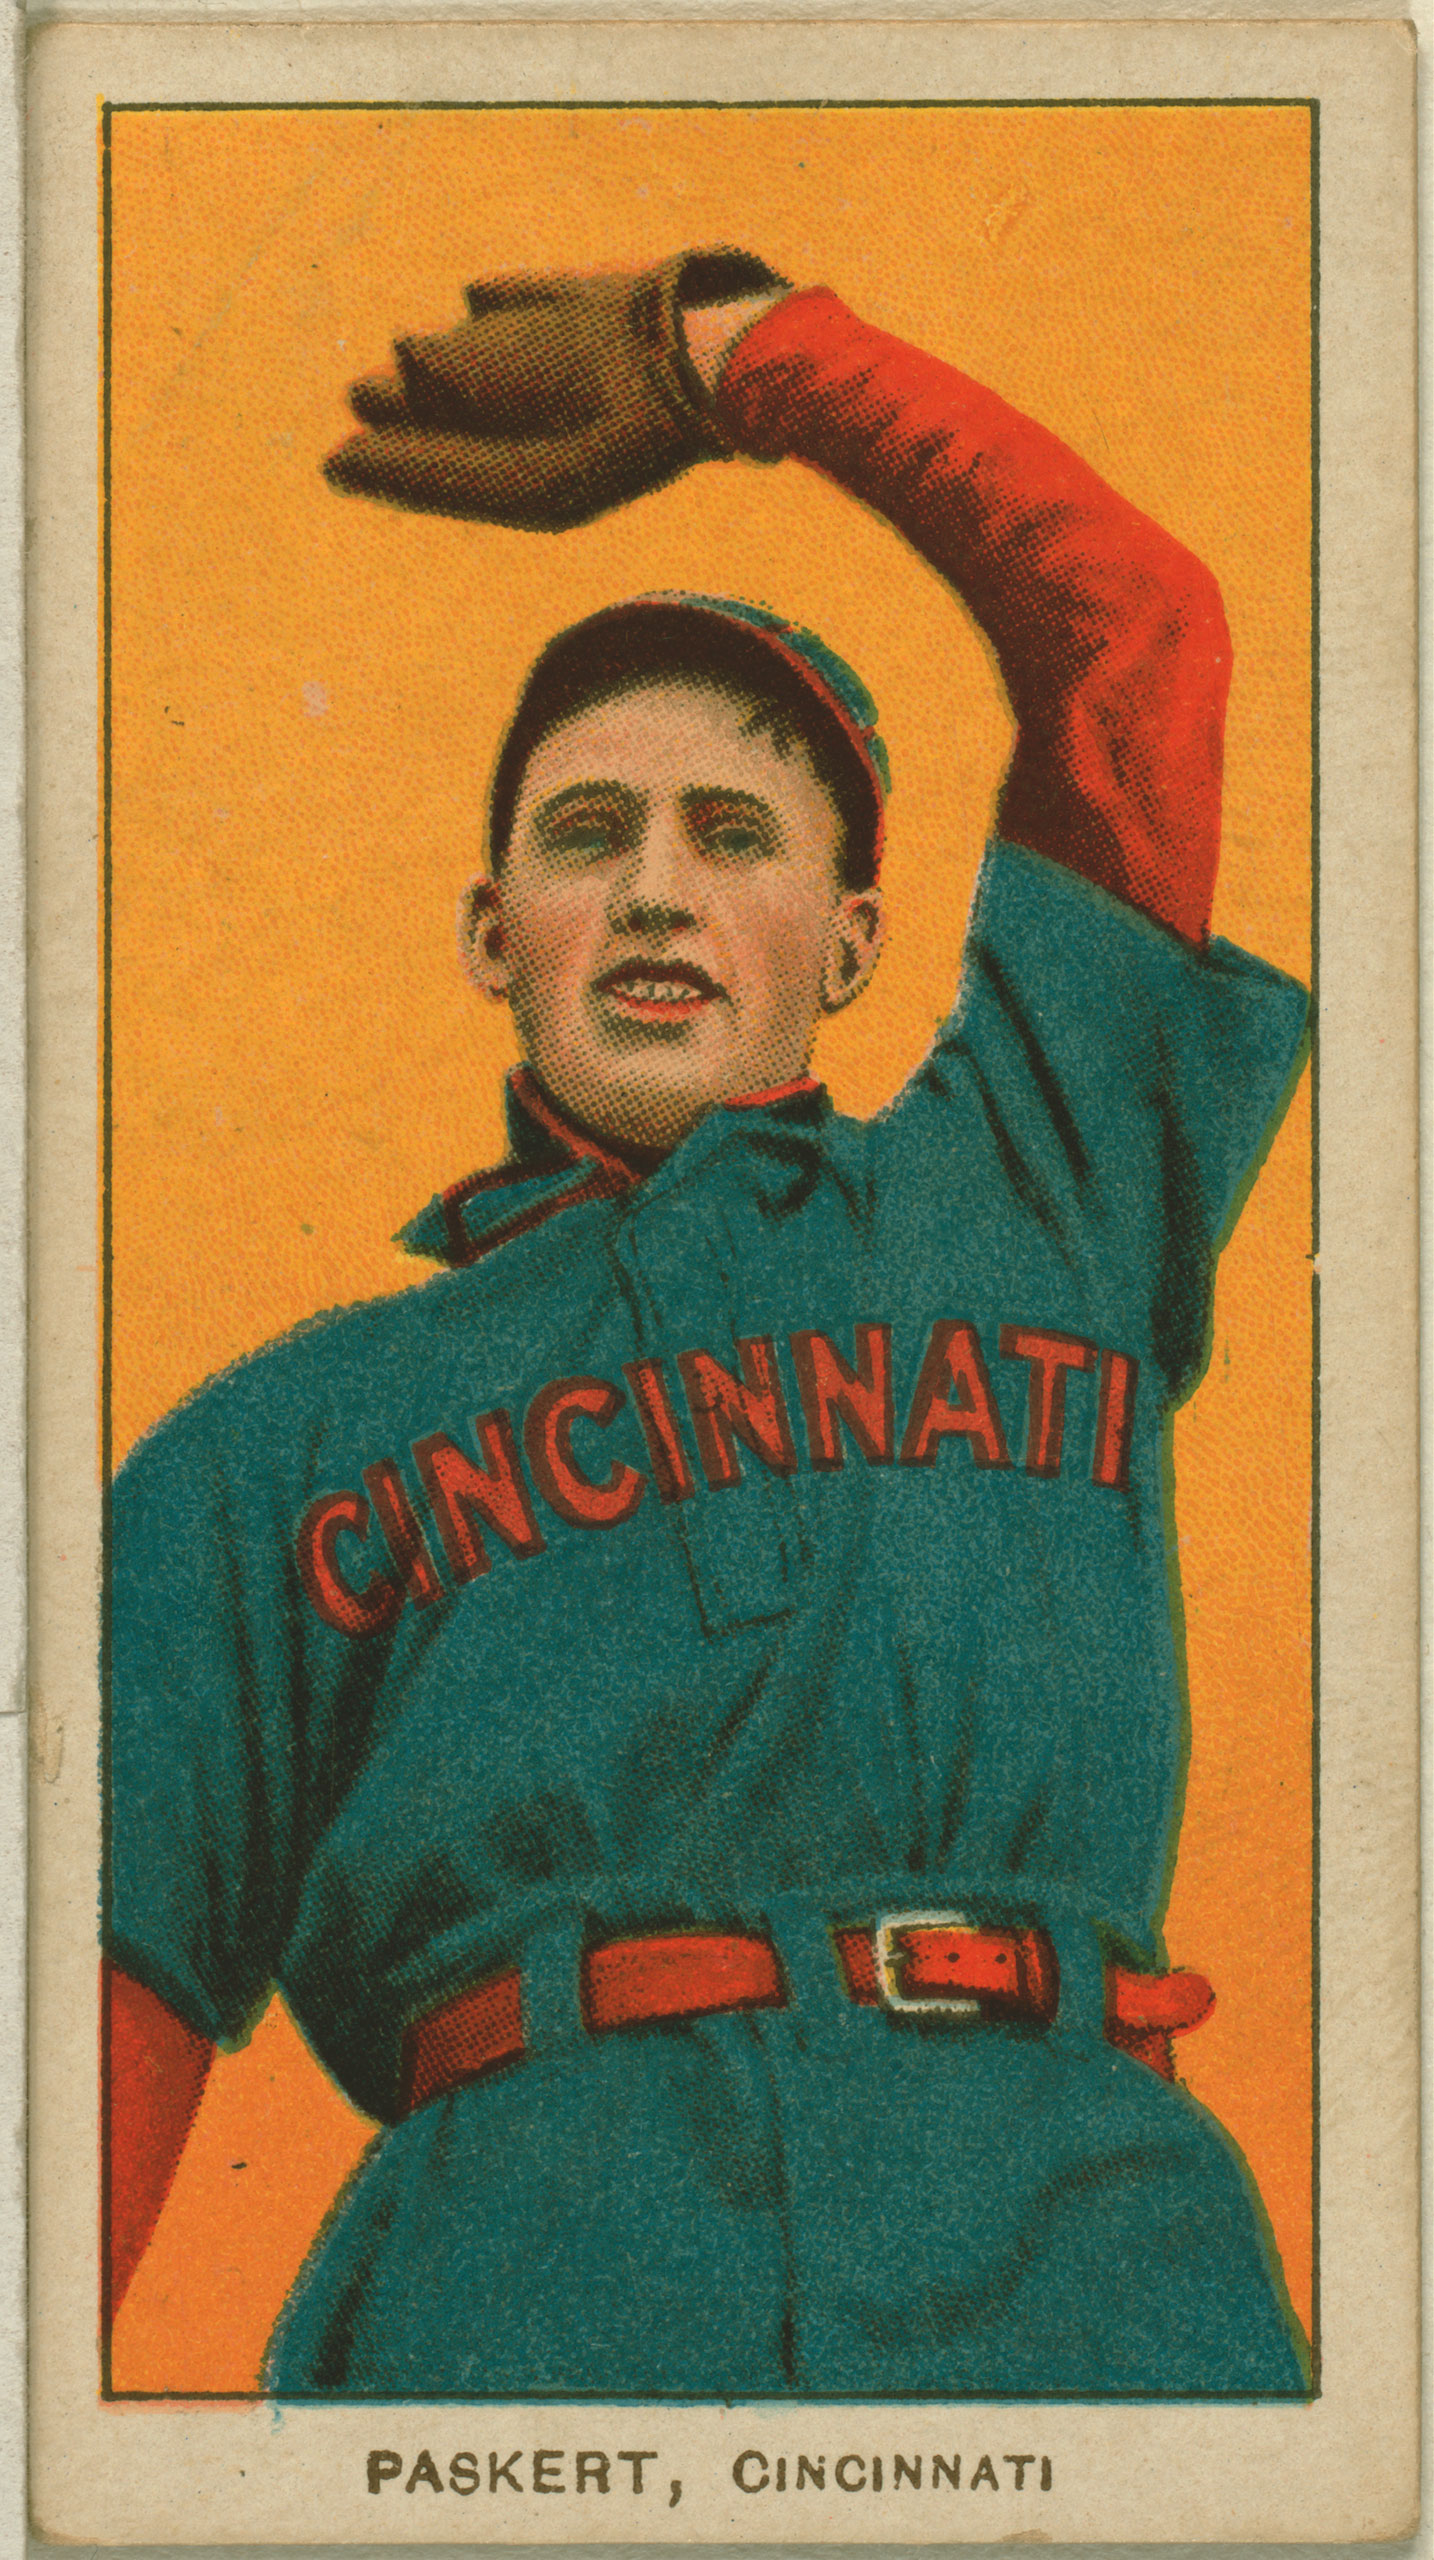 Dode Paskert, Cincinnati Reds, baseball card, 1909-1911.